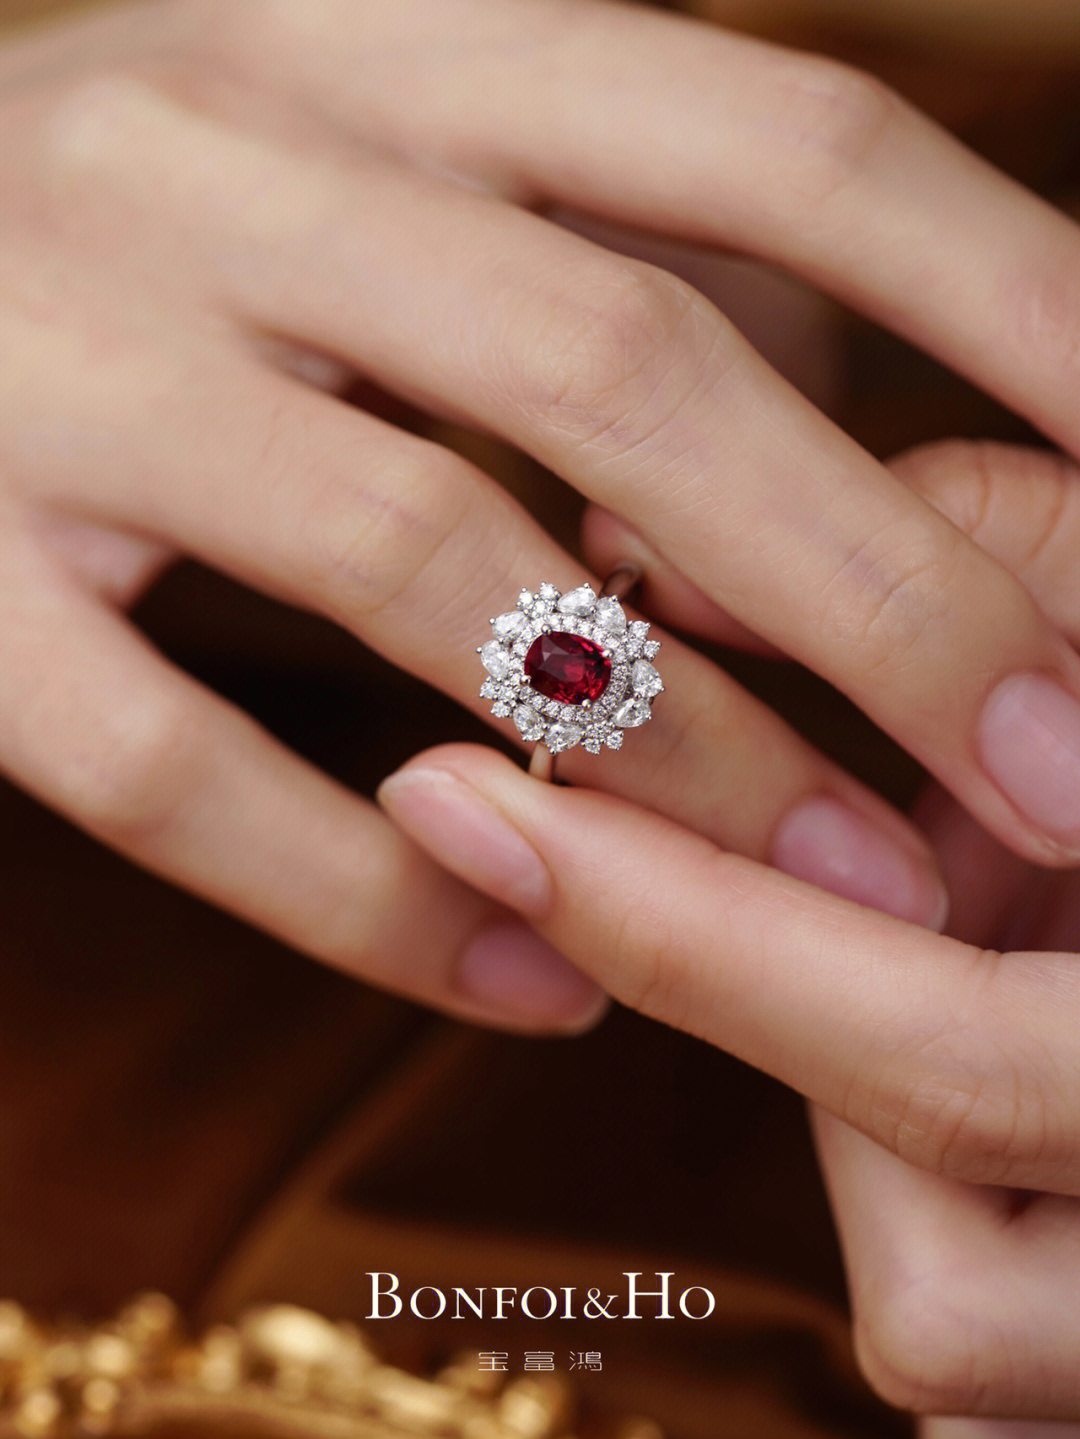 谁说红宝石不能作为求婚的戒指呢